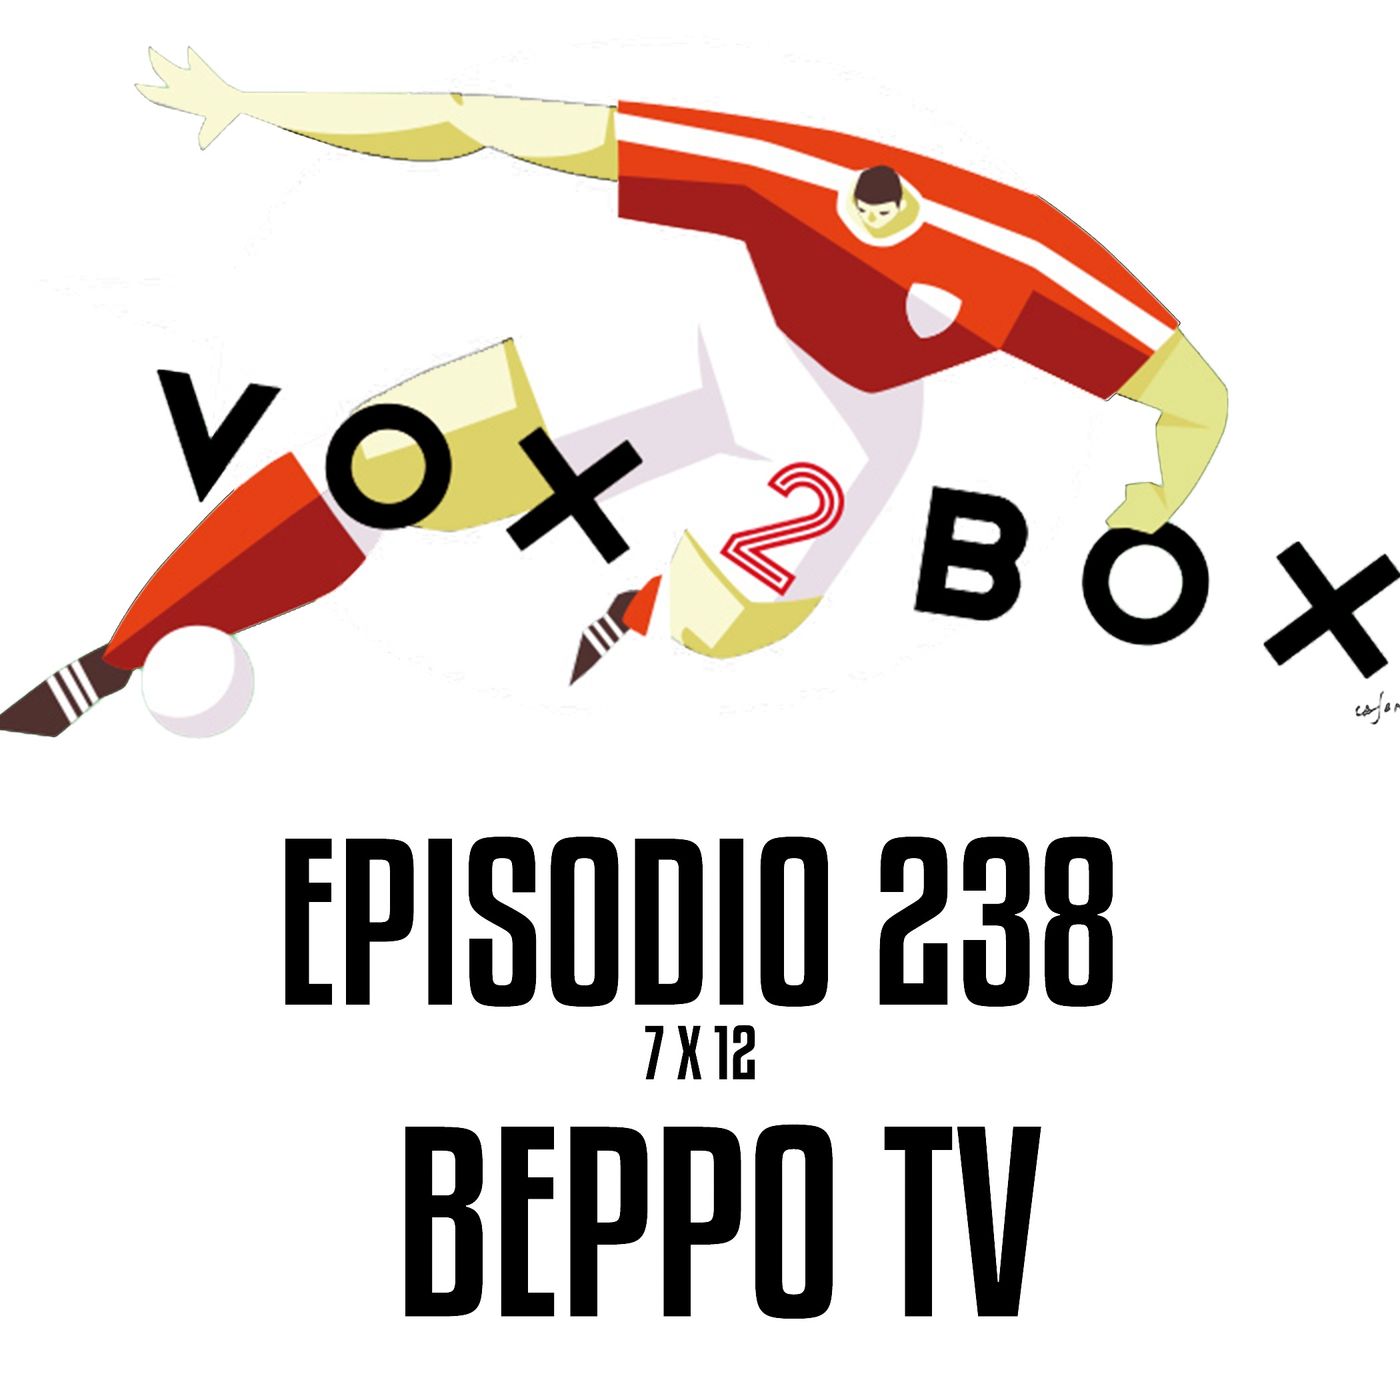 Episodio 238 (7x12) - Beppo TV